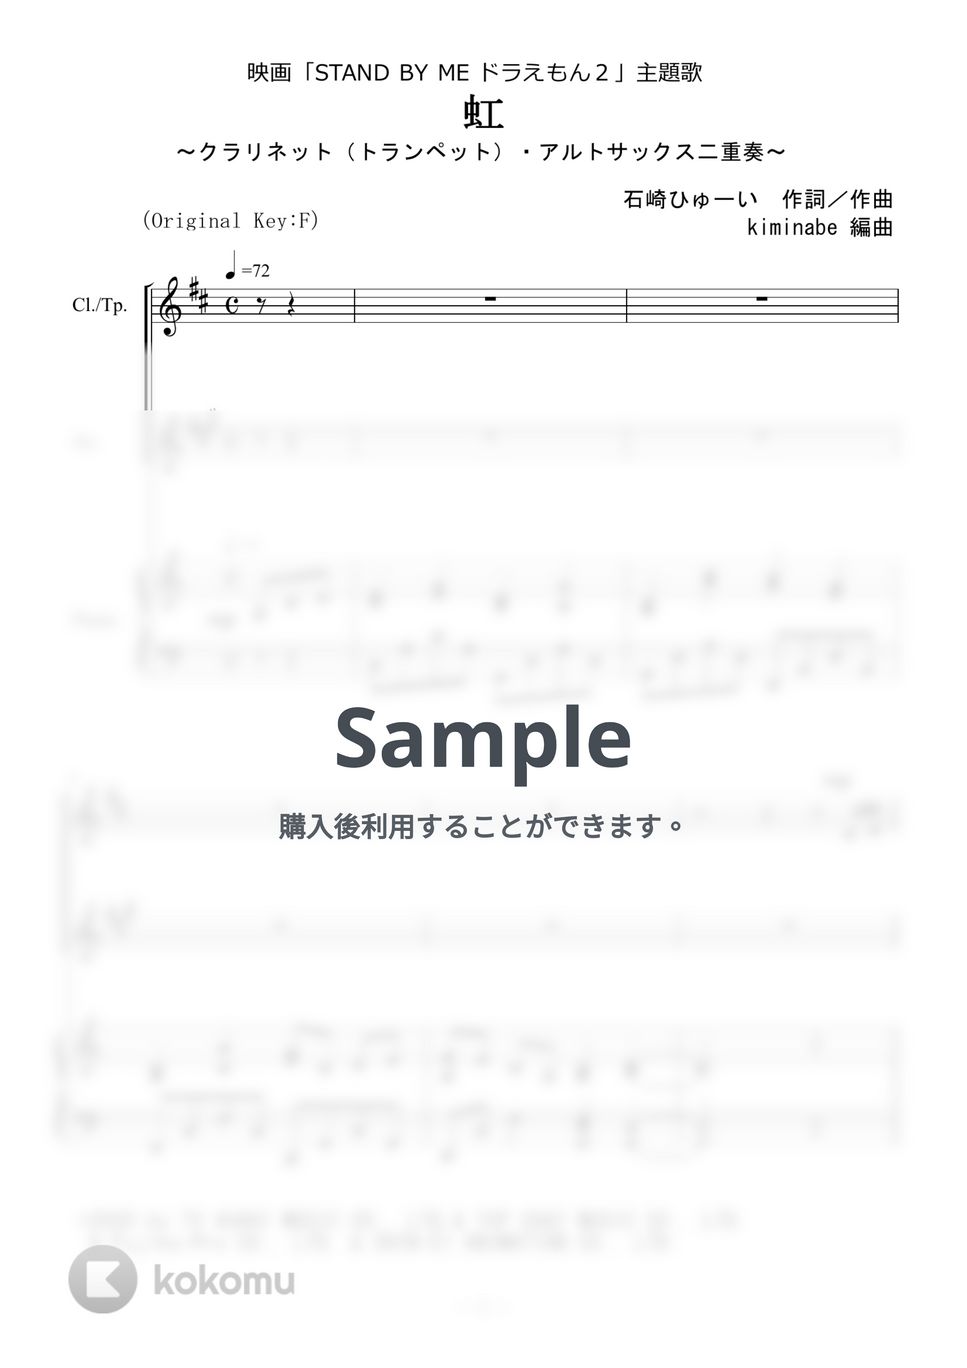 菅田将暉 - 虹 (クラリネット（トランペット）・アルトサックス二重奏) by kiminabe